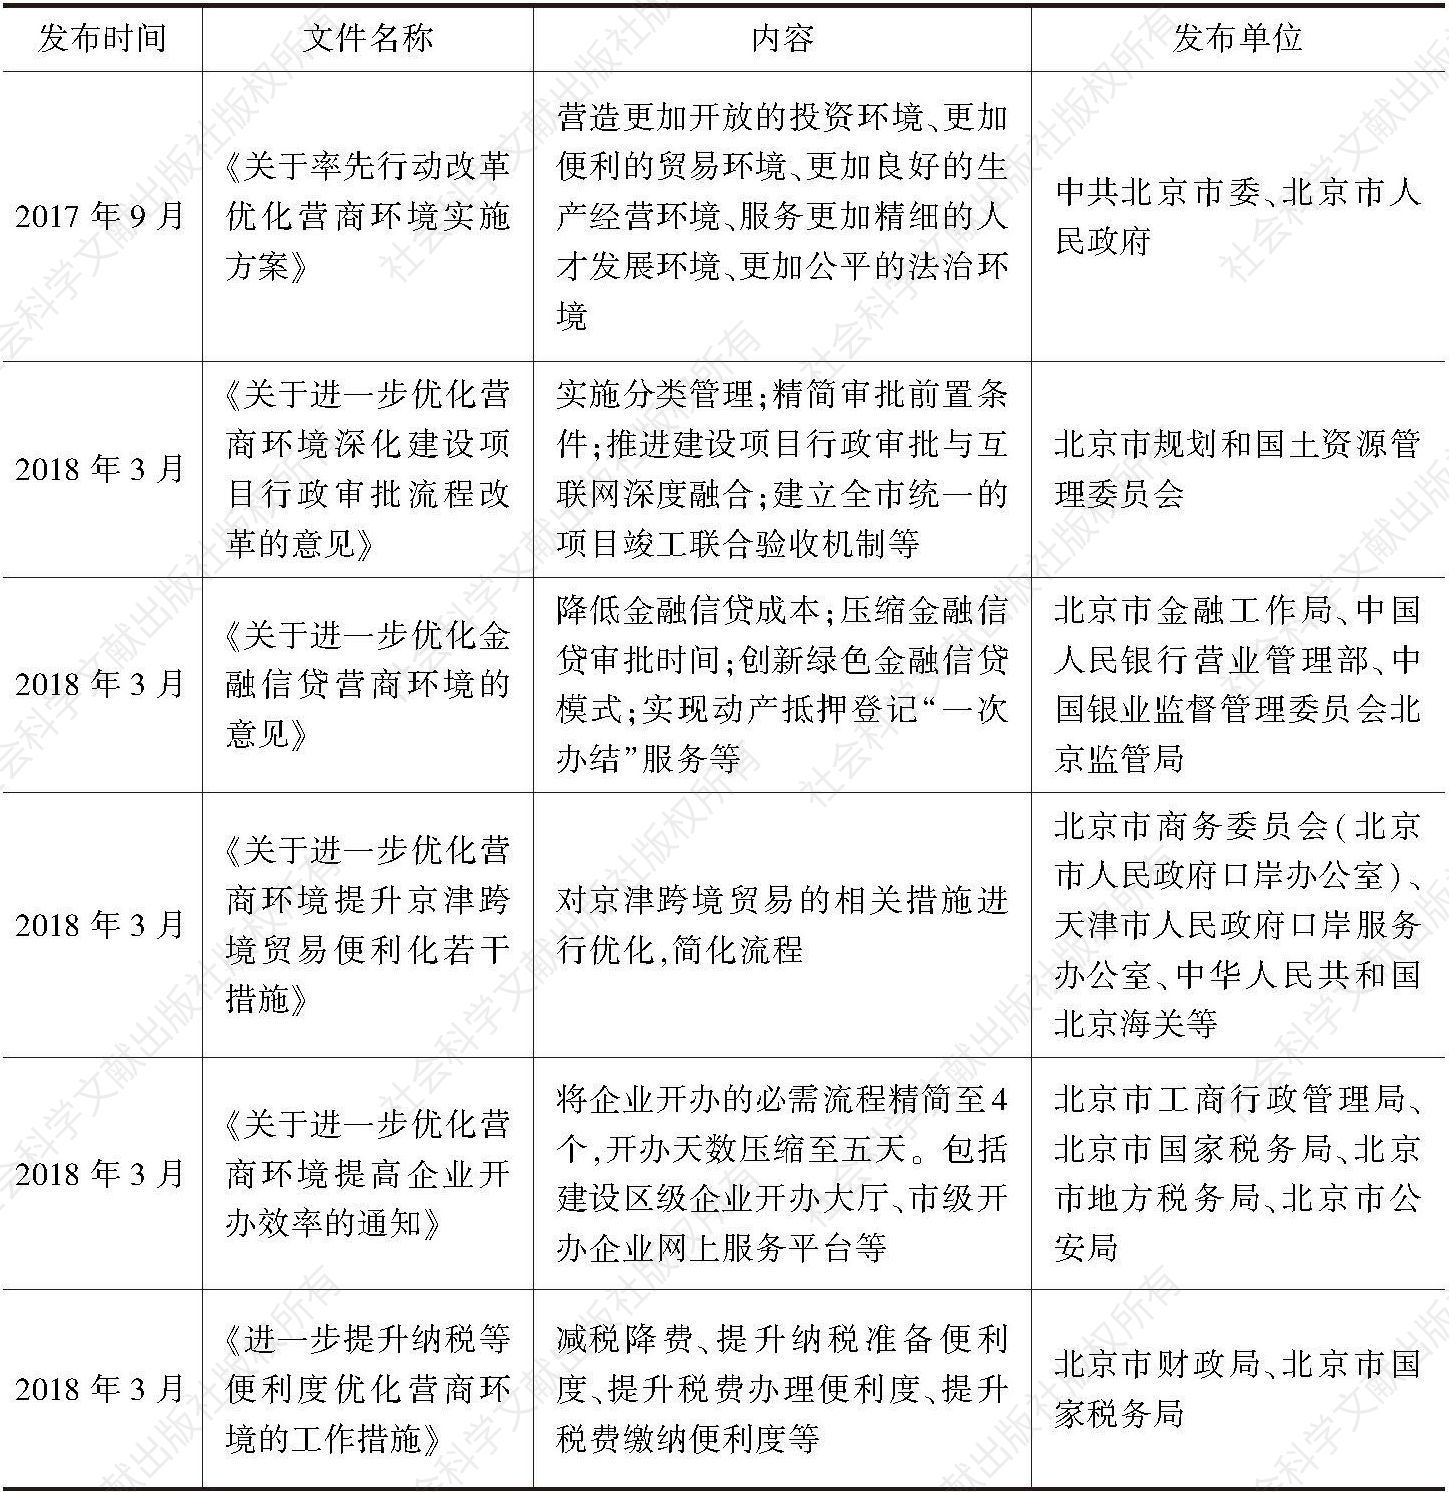 表12 北京市关于优化营商环境的部分相关文件